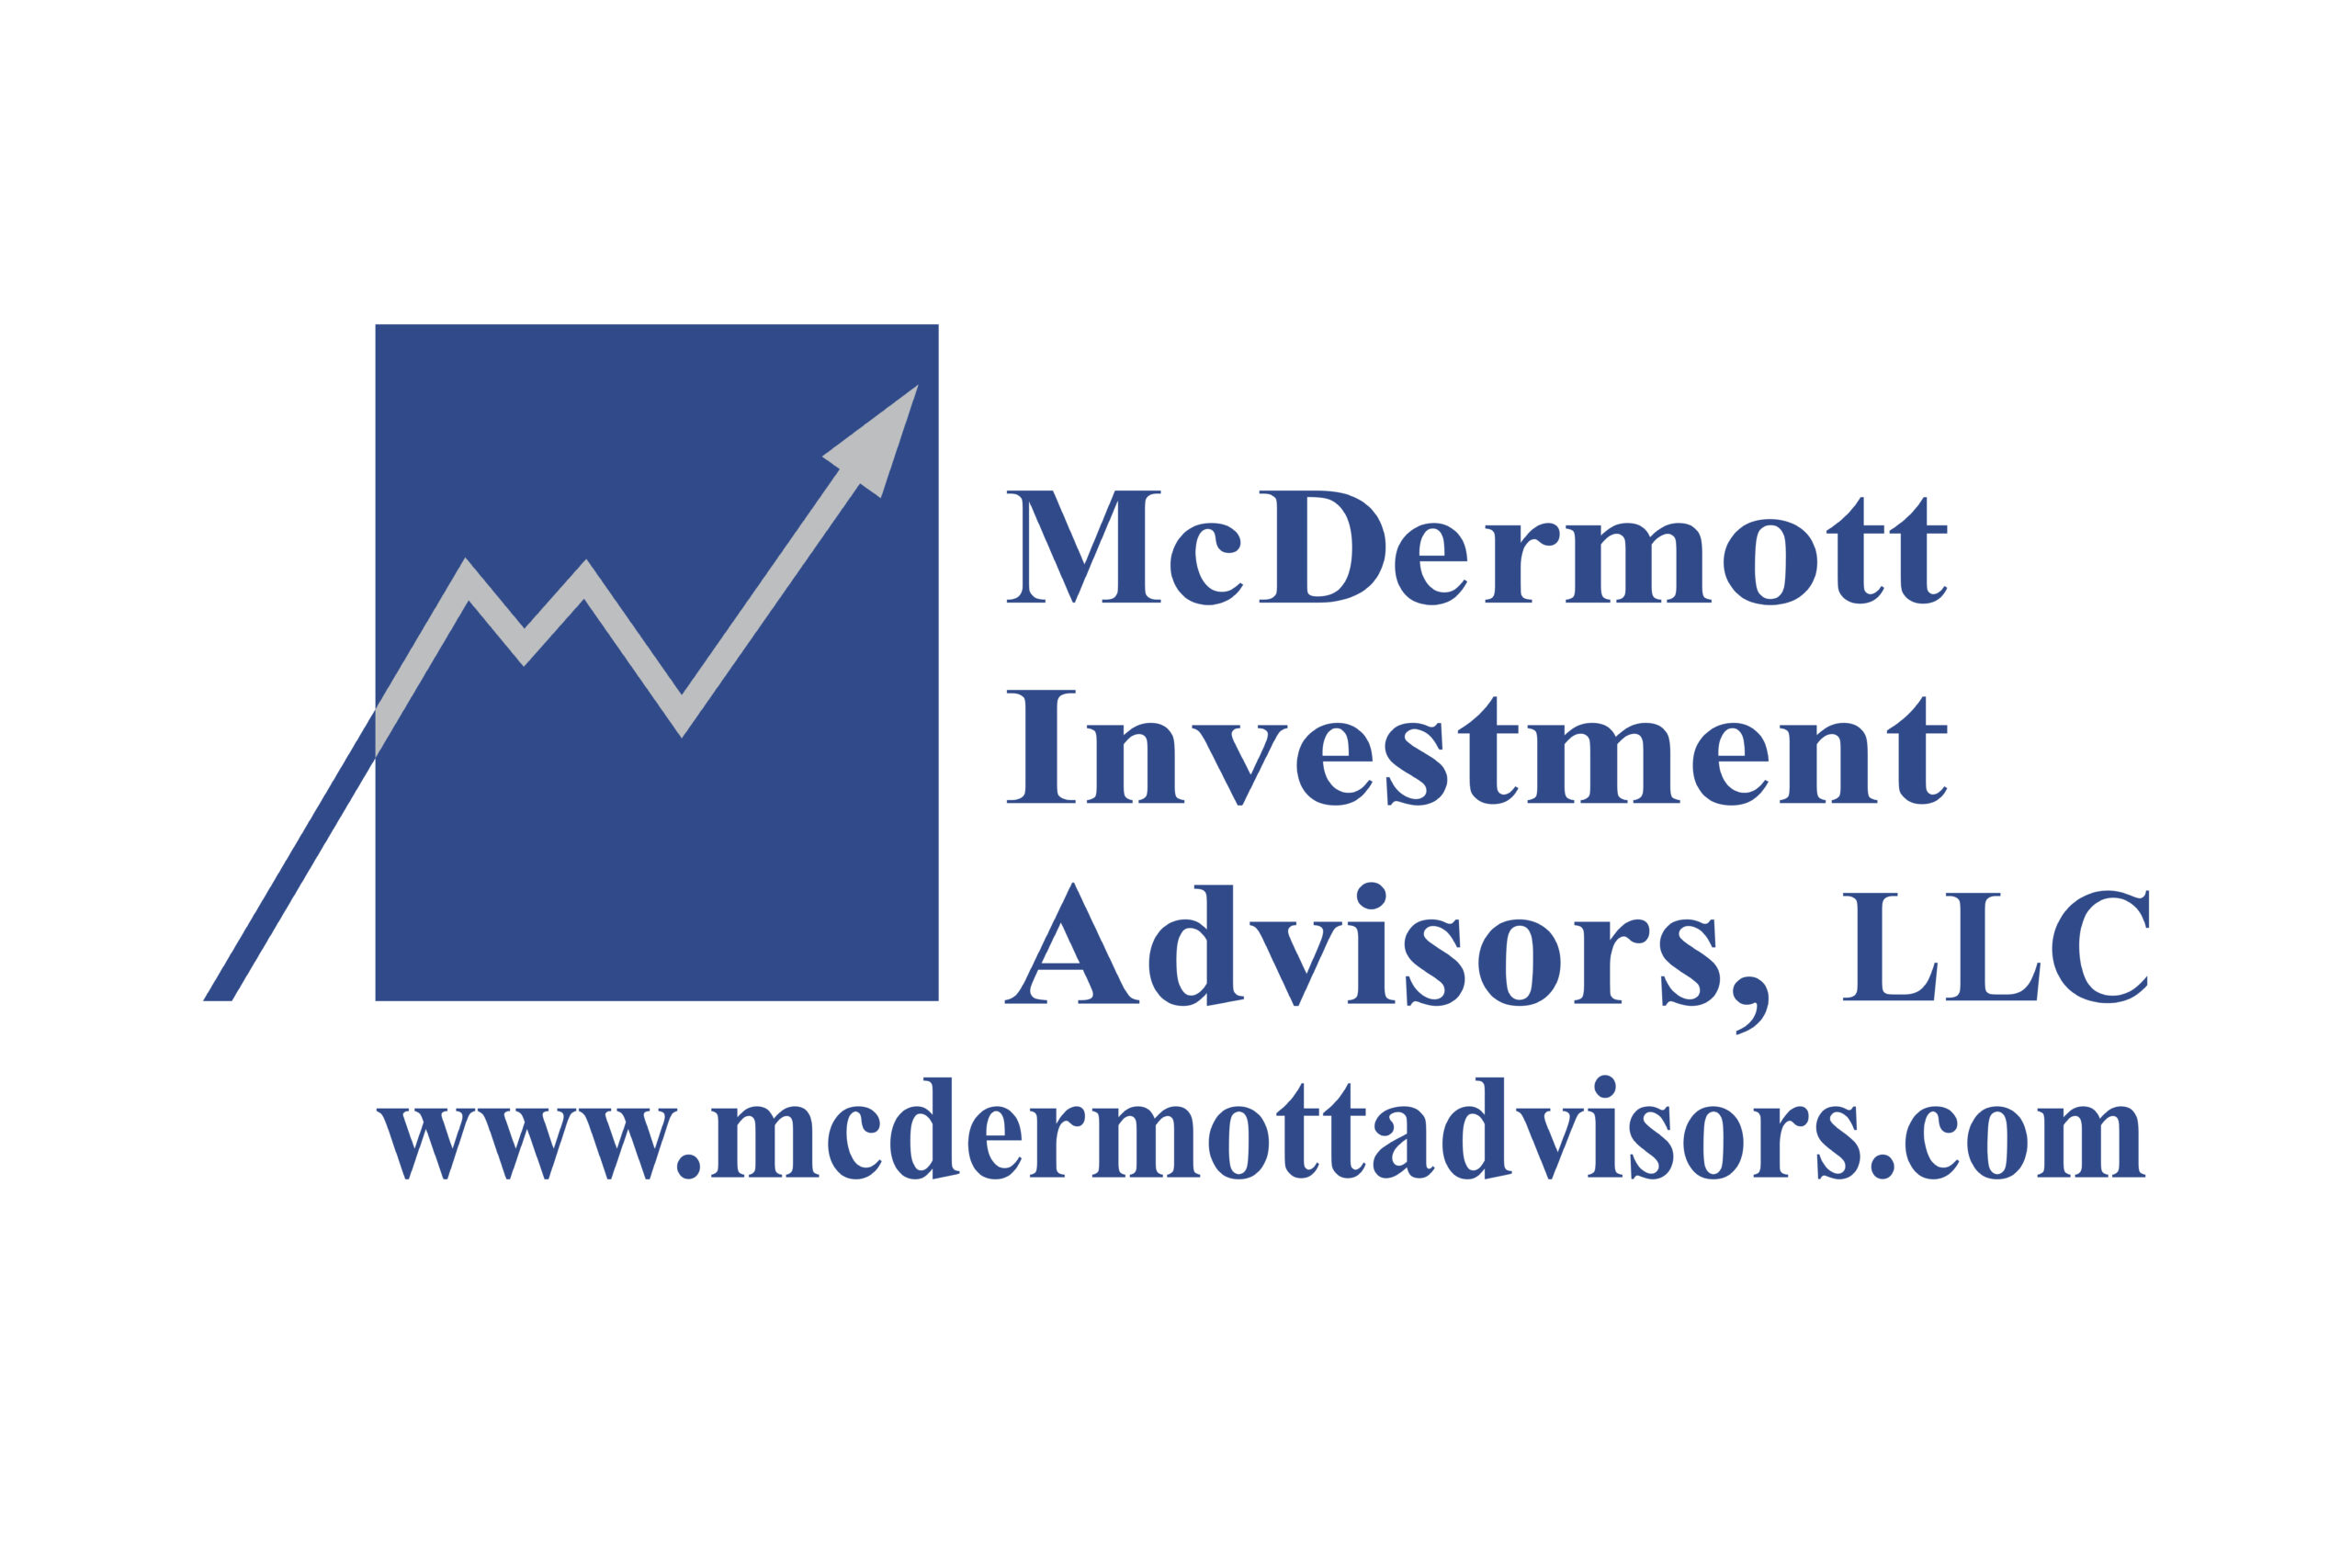 McDermott Investment Advisors, LLC